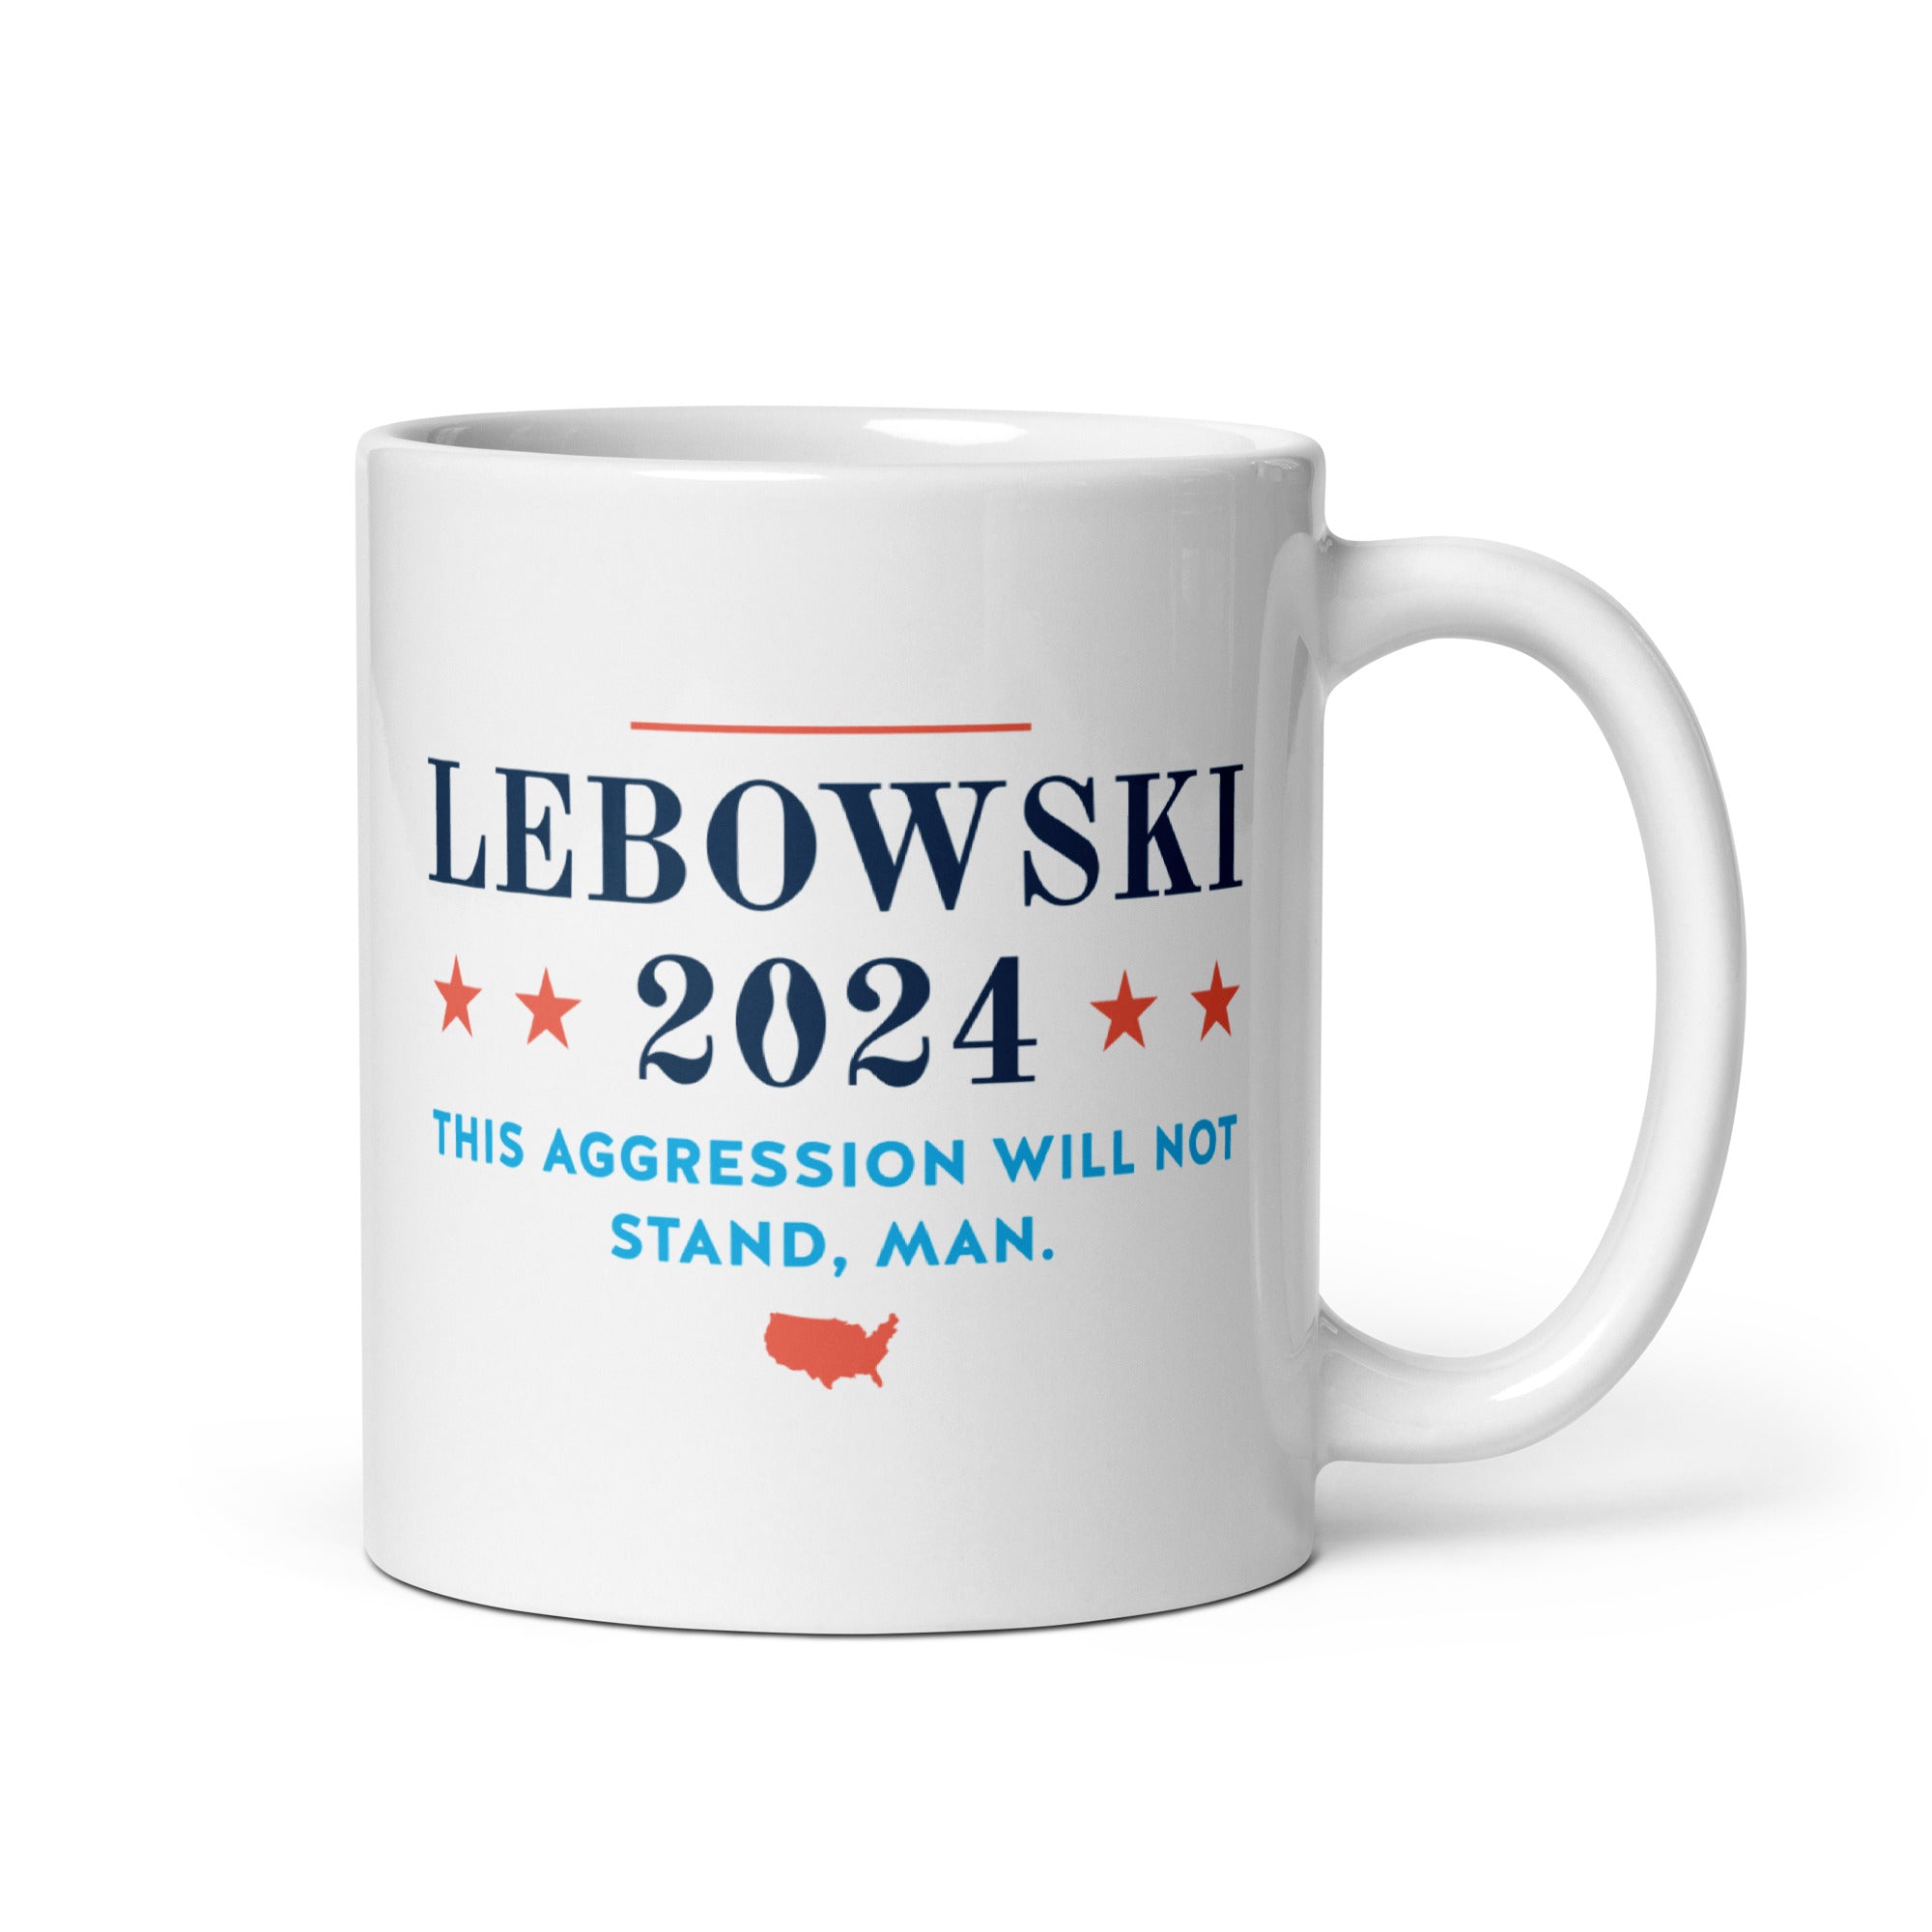 Lebowski 2024 - 11oz Coffee Mug